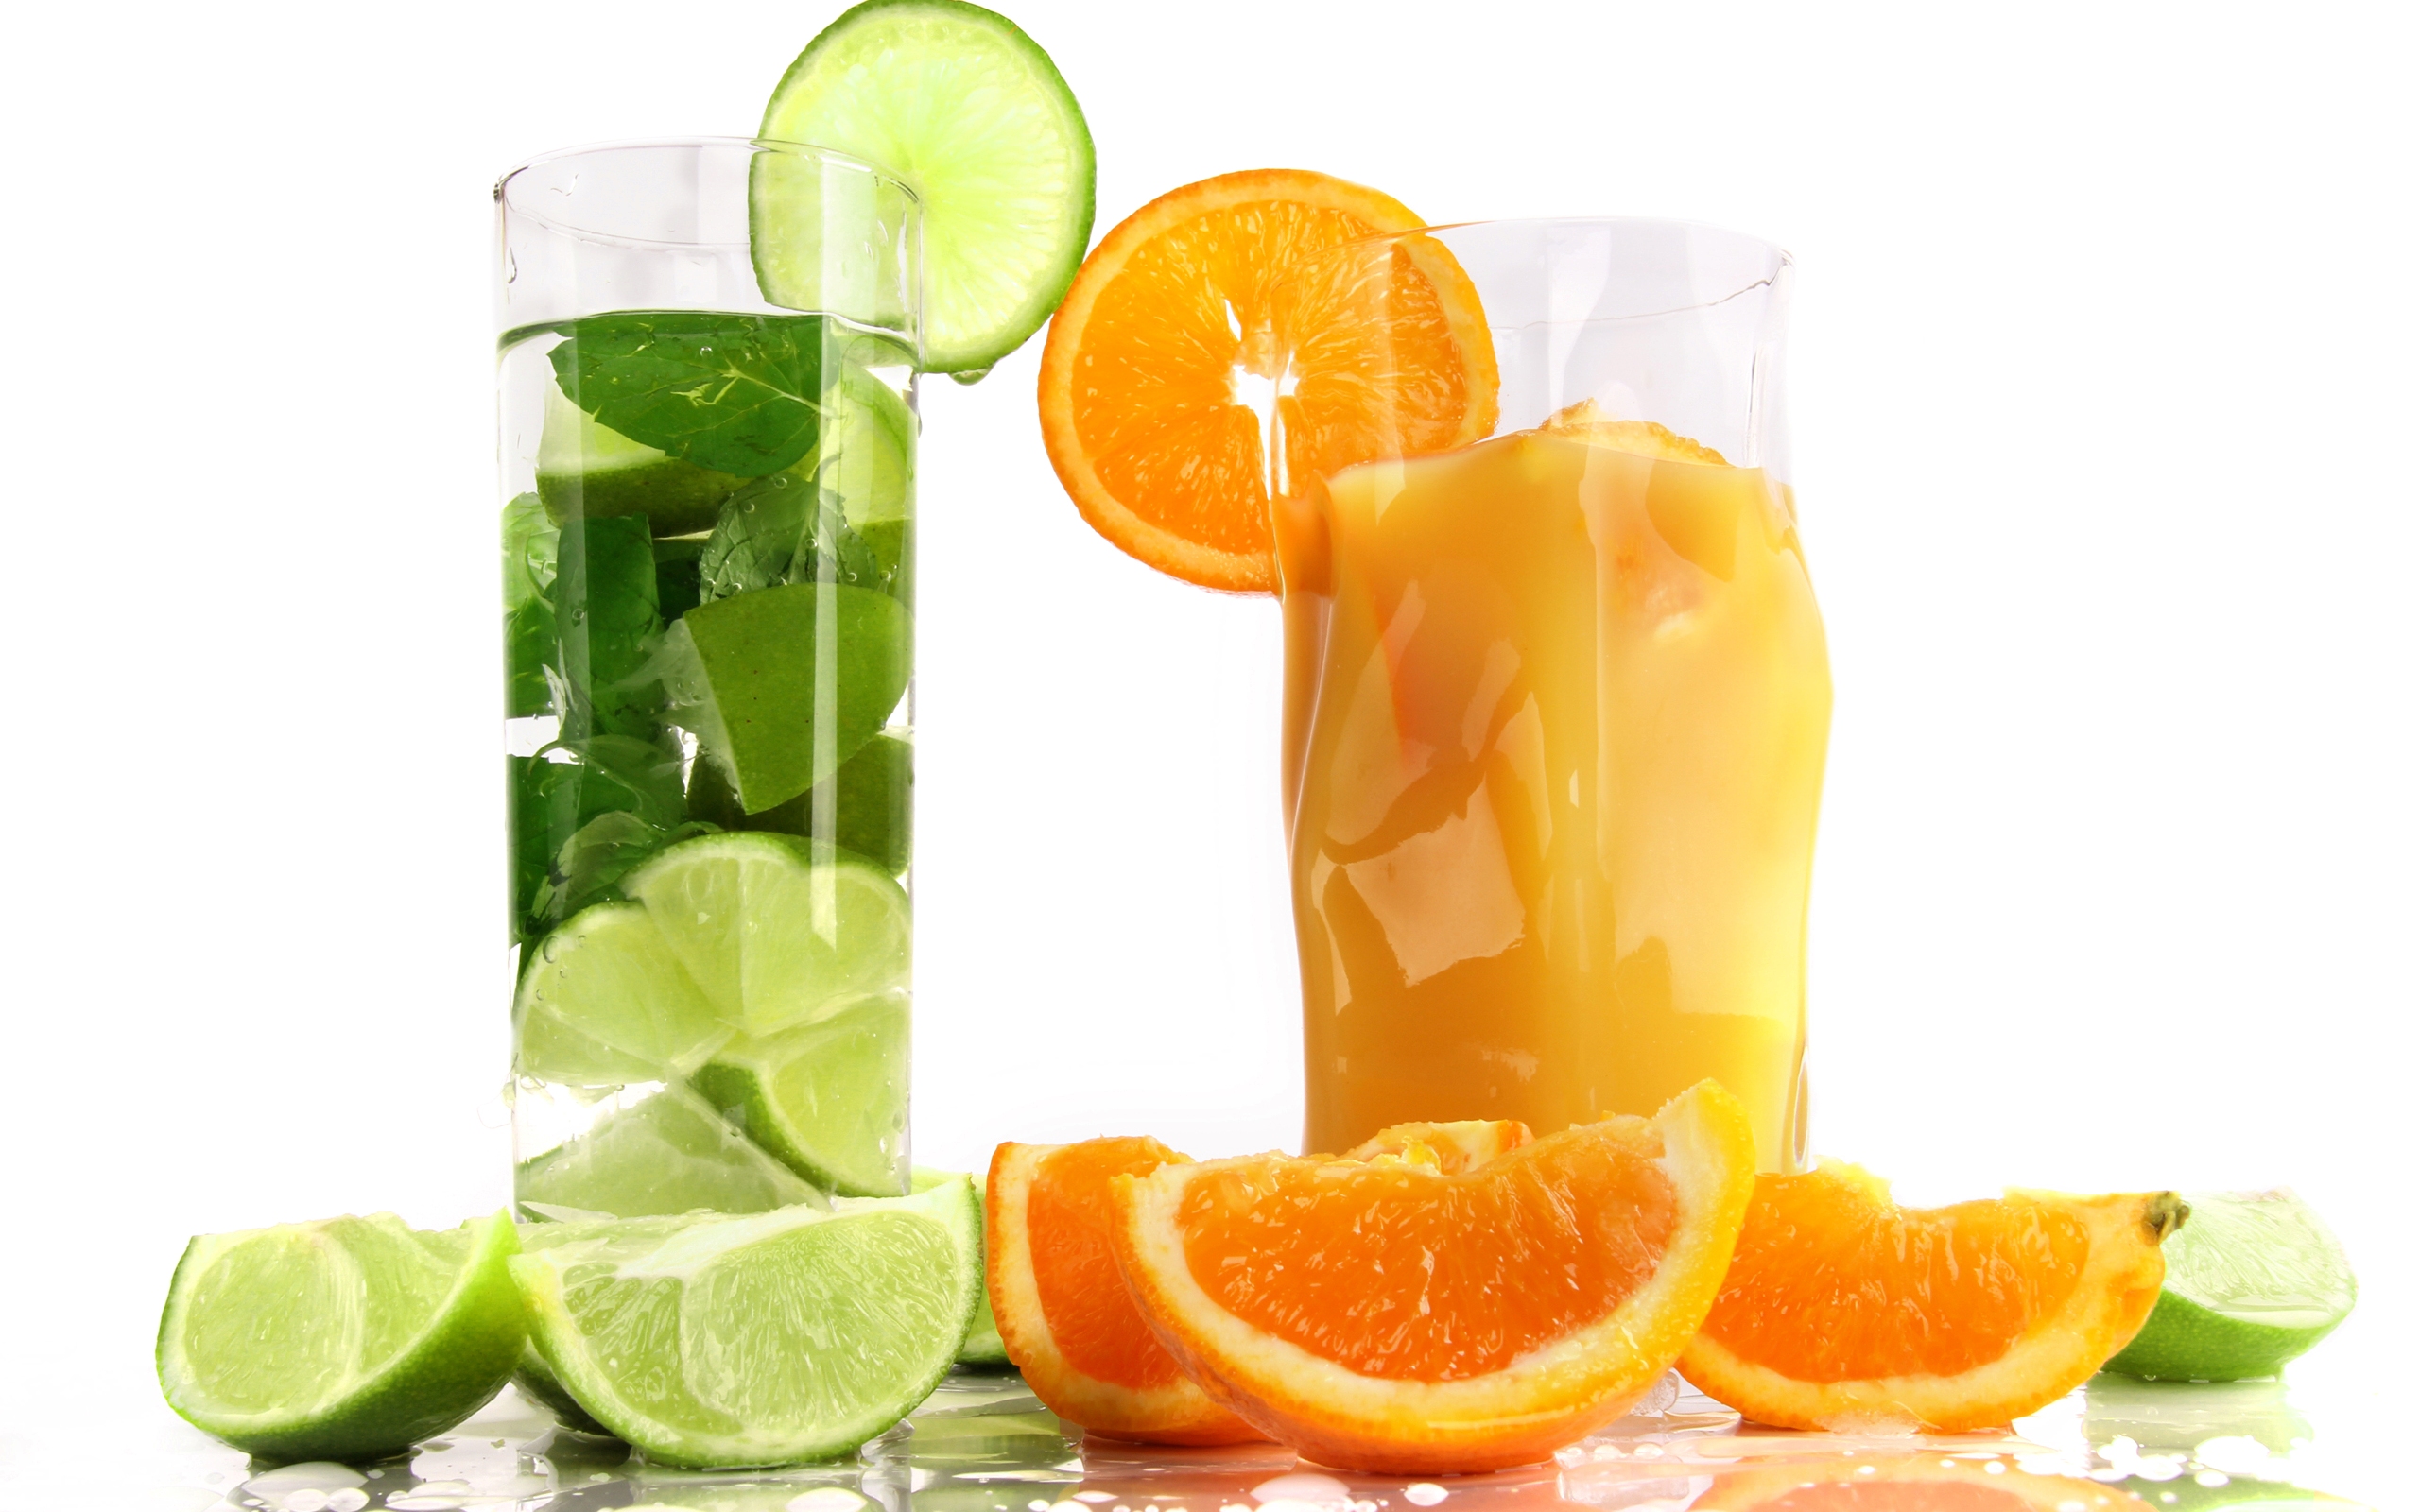 Orange Drink Wallpaper High Quality Image For Desktop